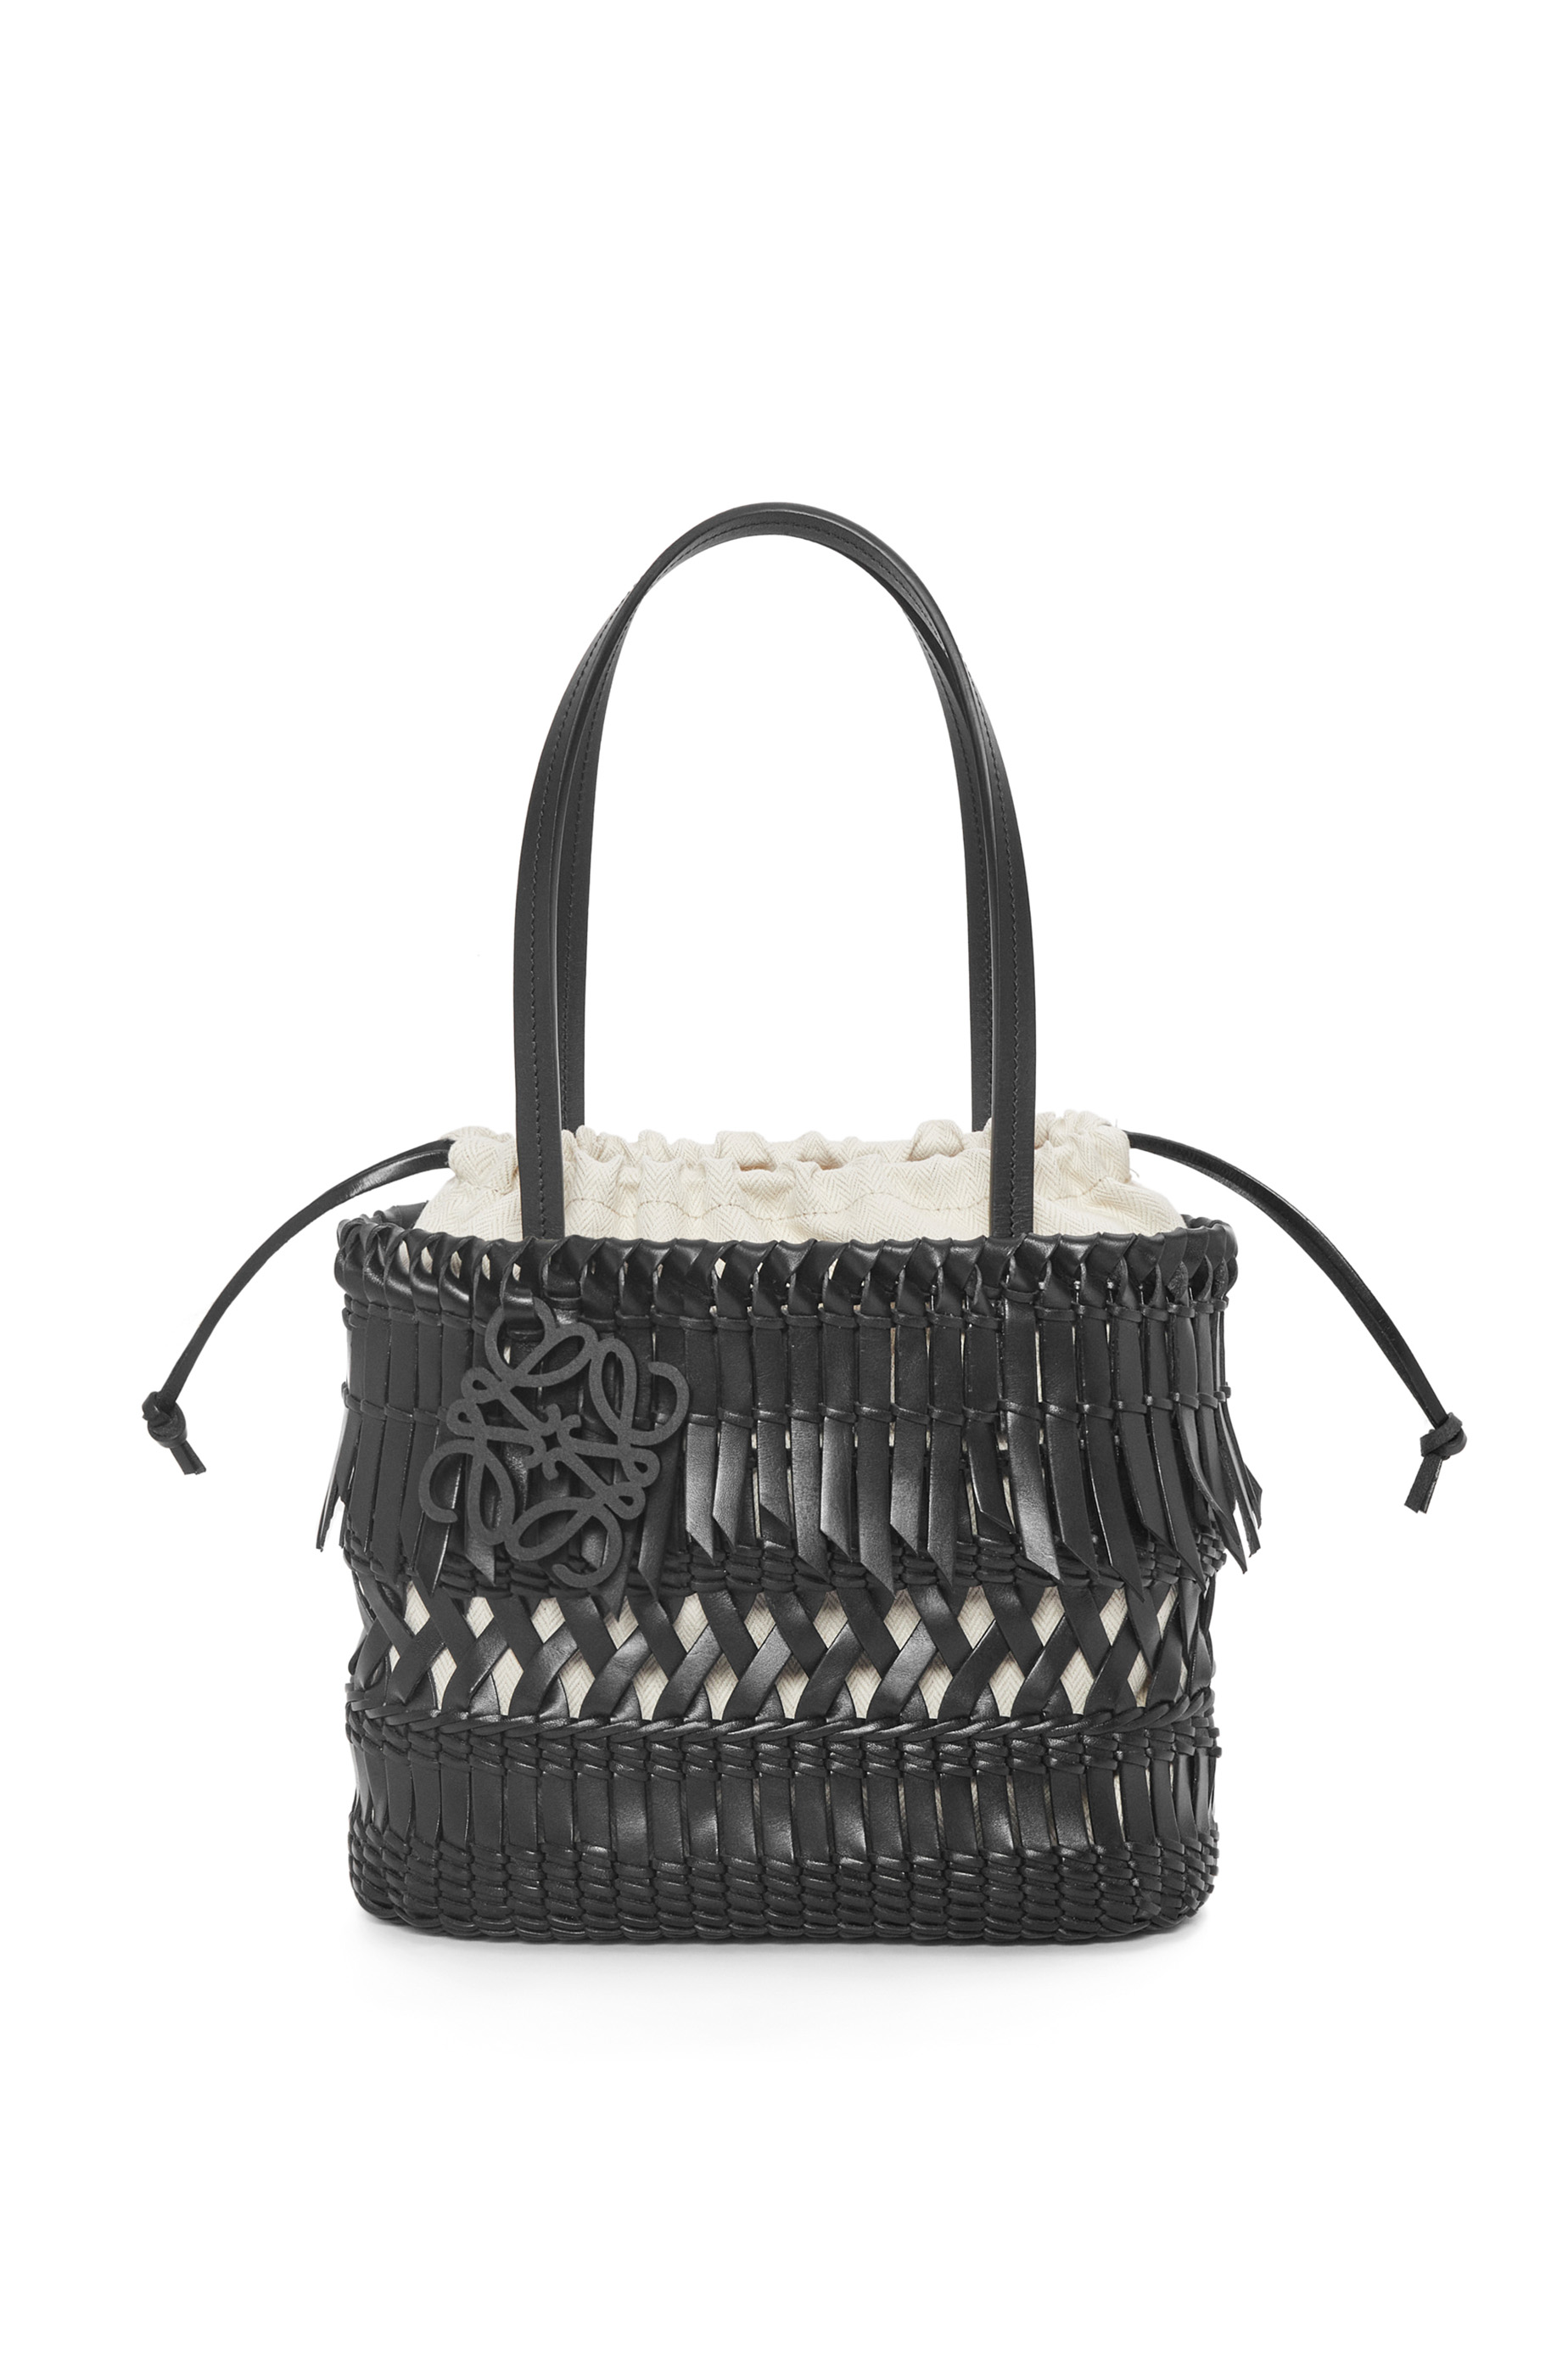 Loewe x Paula Ibiza Bags | our Basket Bag collection | Loewe - LOEWE